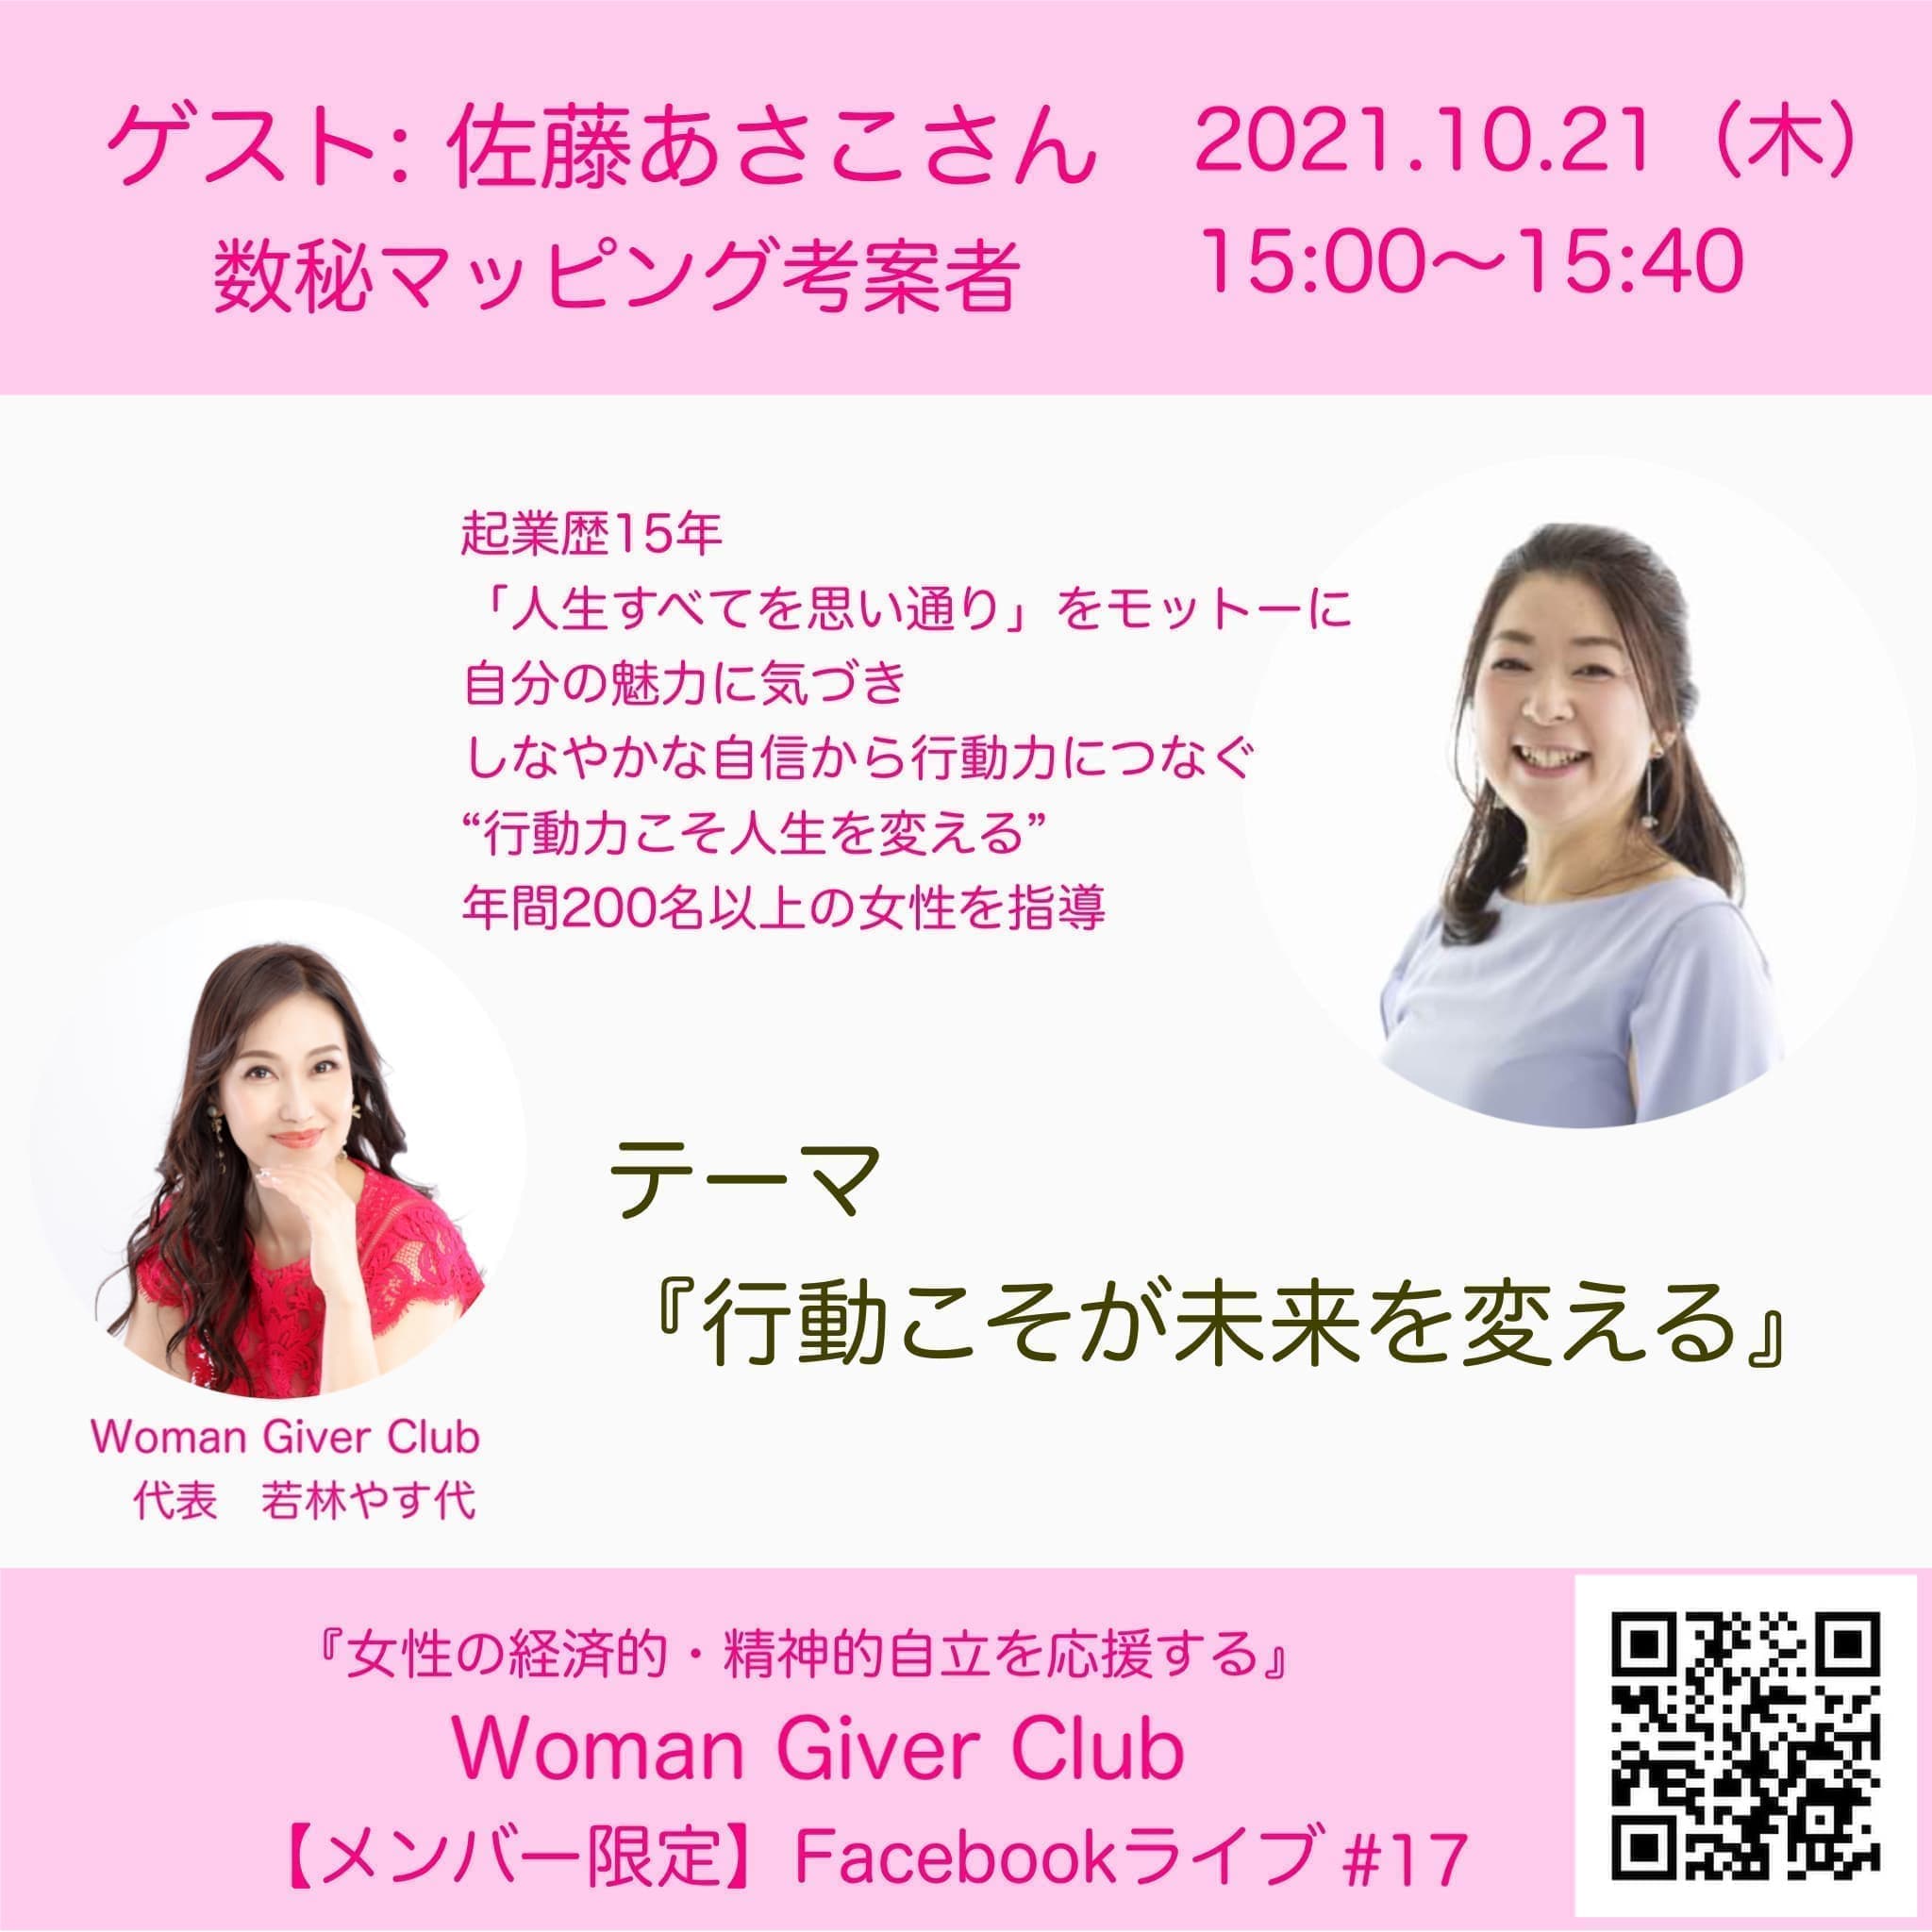 Woman Giver Club 限定 フェイスブックライブ#17『行動こそが未来を帰る』・佐藤あきこさん